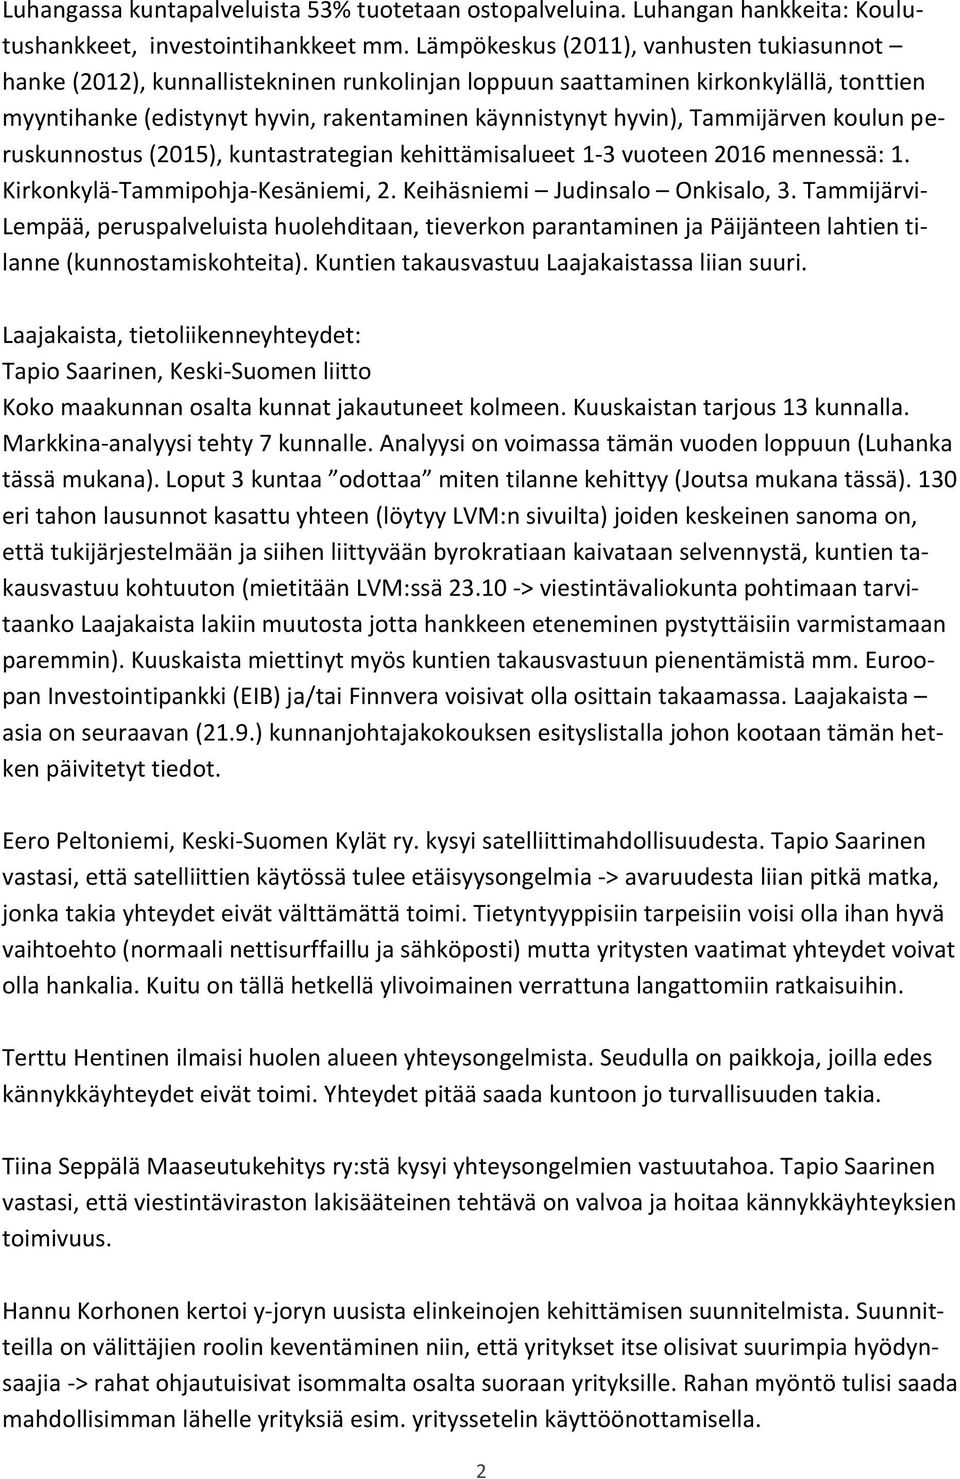 Tammijärven koulun peruskunnostus (2015), kuntastrategian kehittämisalueet 1-3 vuoteen 2016 mennessä: 1. Kirkonkylä-Tammipohja-Kesäniemi, 2. Keihäsniemi Judinsalo Onkisalo, 3.